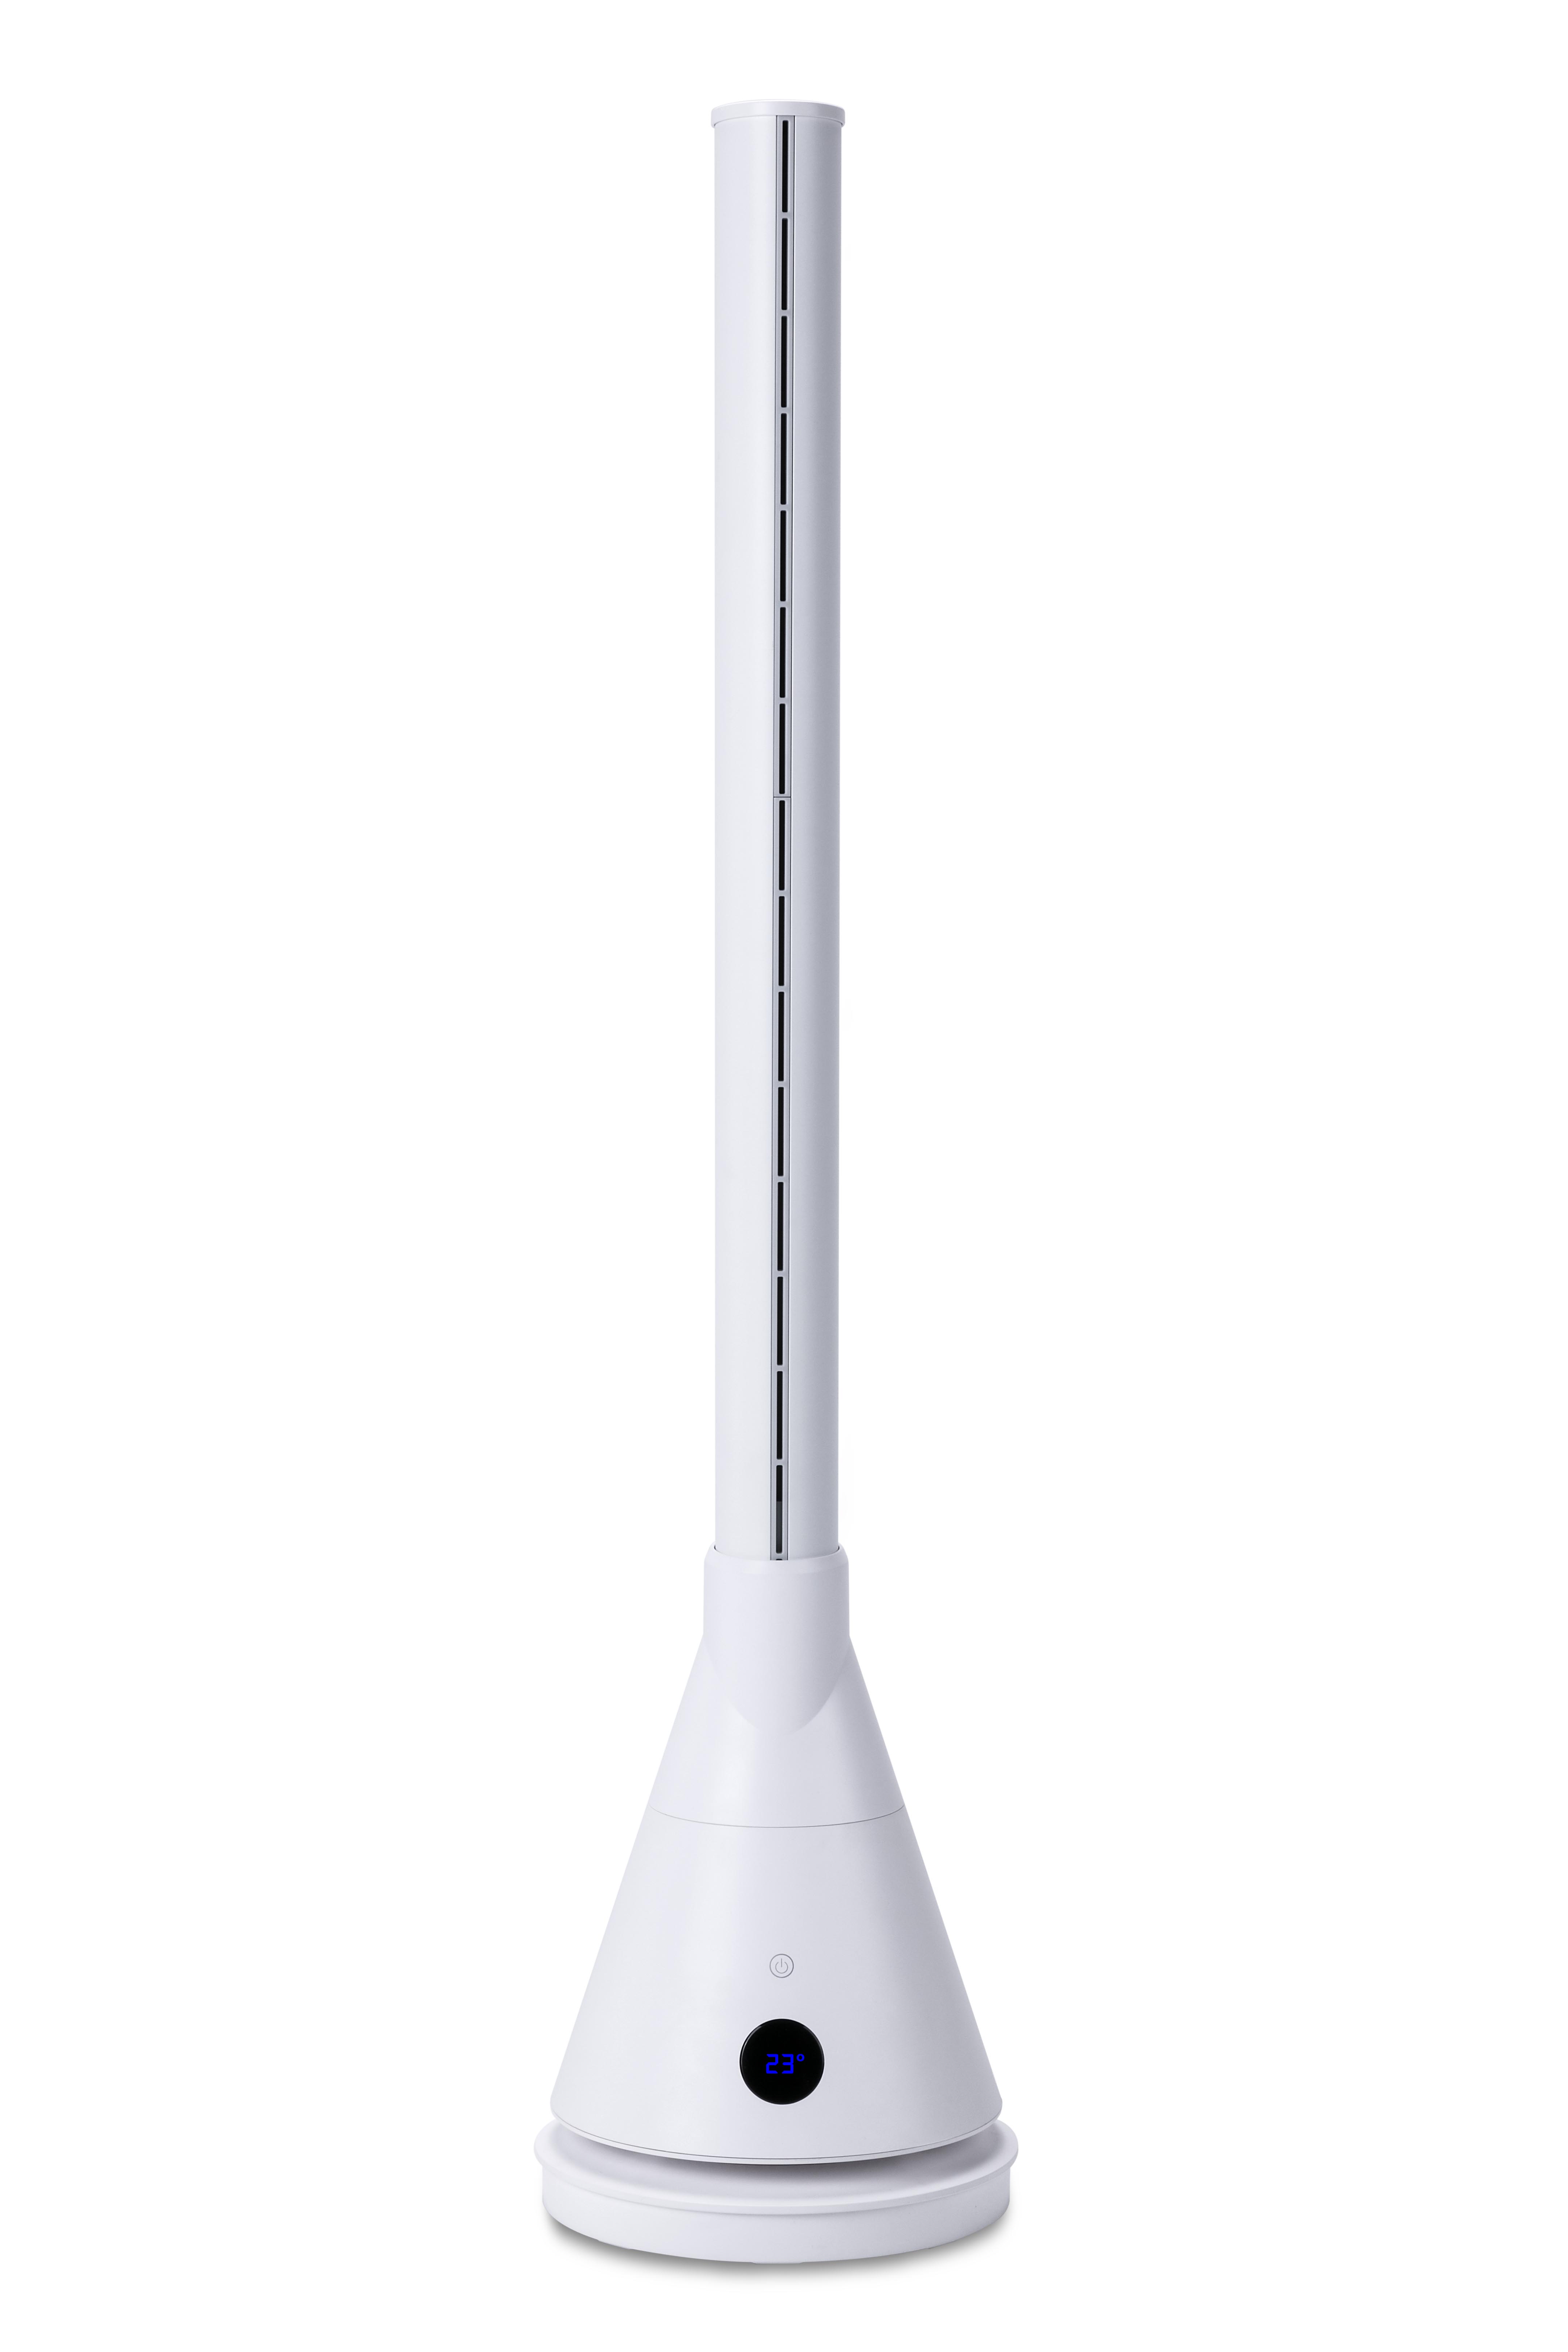 Newteck Dual 365 Torre de Ventilacion Frio/Calor 1800W - Oscilacion 80º - Modo Sueño - Panel Tactil - Mando a Distancia - Color Blanco